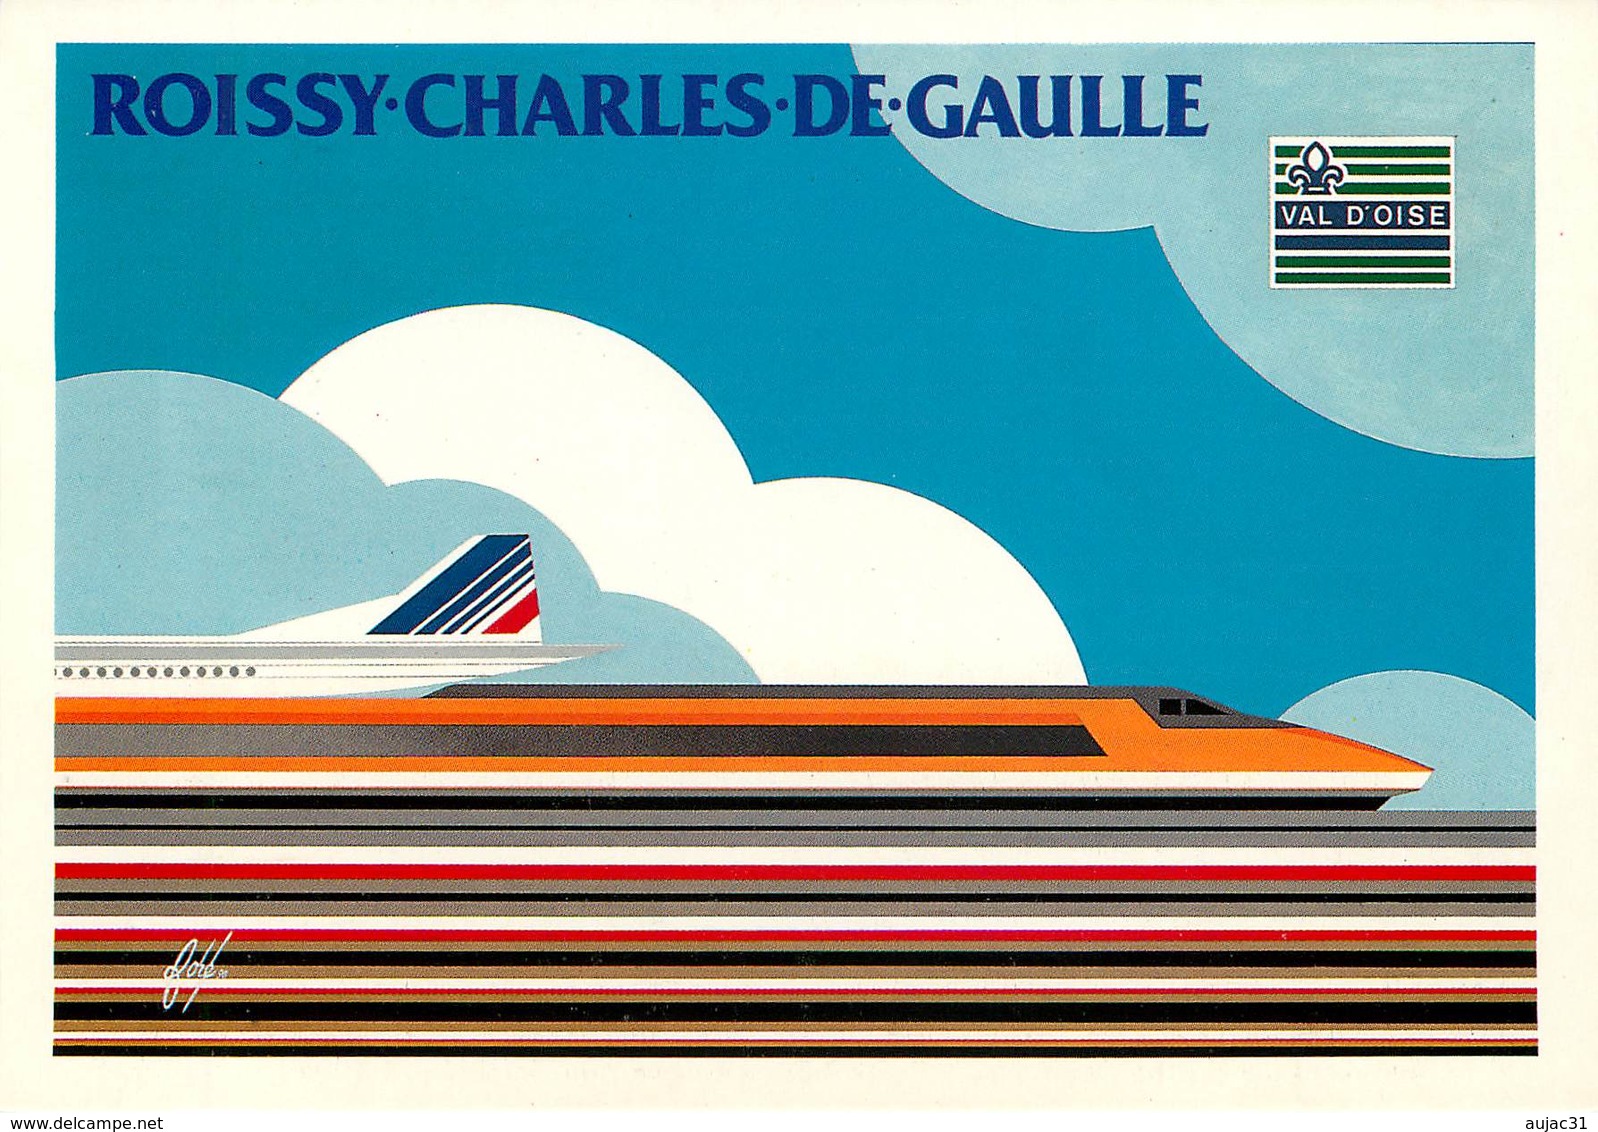 IIlustrateur Fore -Enghien Les Bains- Roissy Charles De Gaulle - Trains - Avions - Peintre - Année Van Gogh - Autographe - Fore